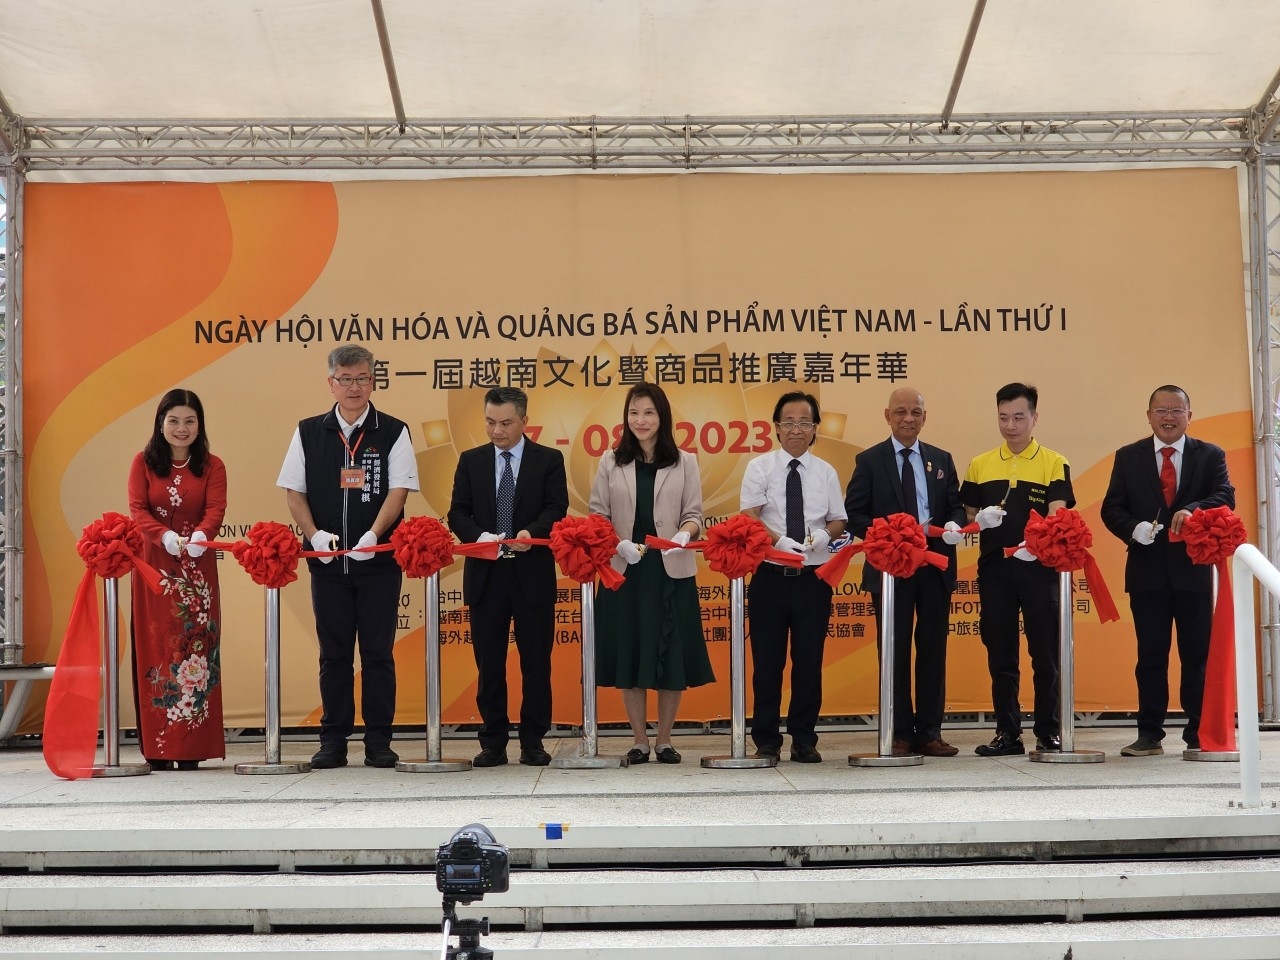 第一届越南文化暨商品推广嘉年华由越南台湾商业协会主办。